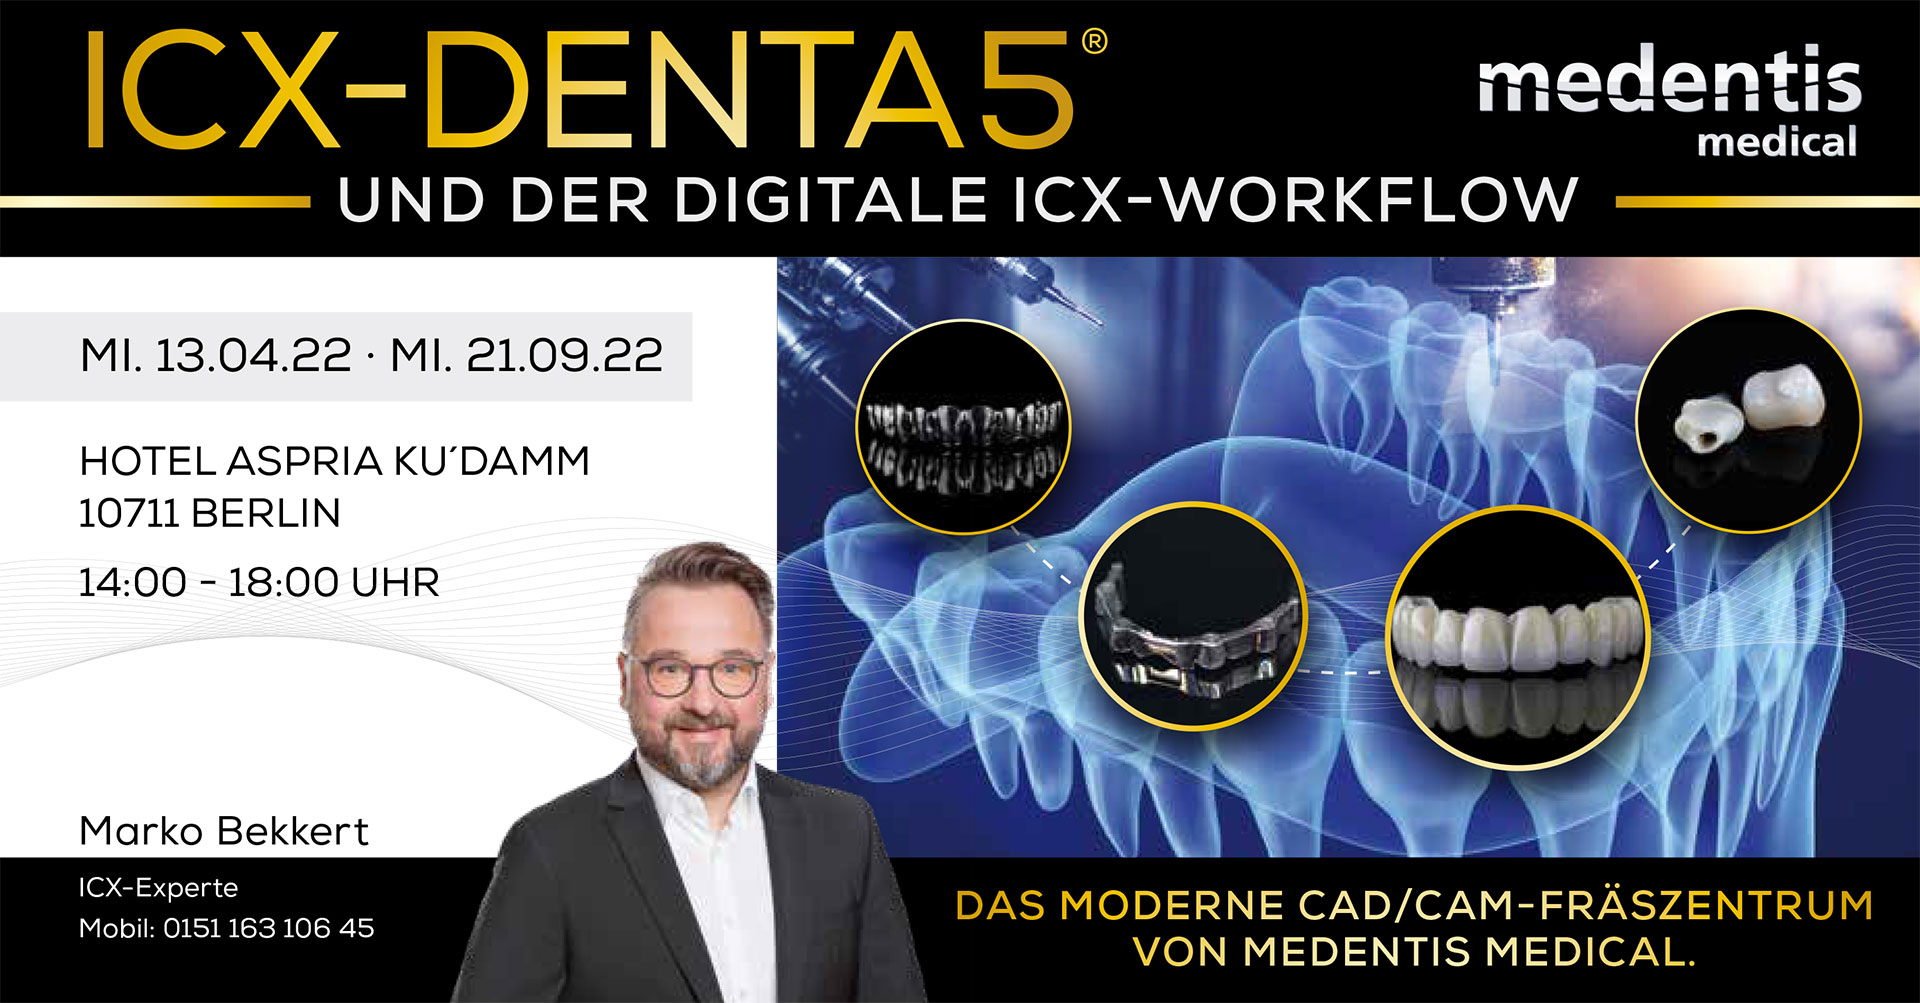 ICX-DENTA5® und der digitale ICX-Workflow